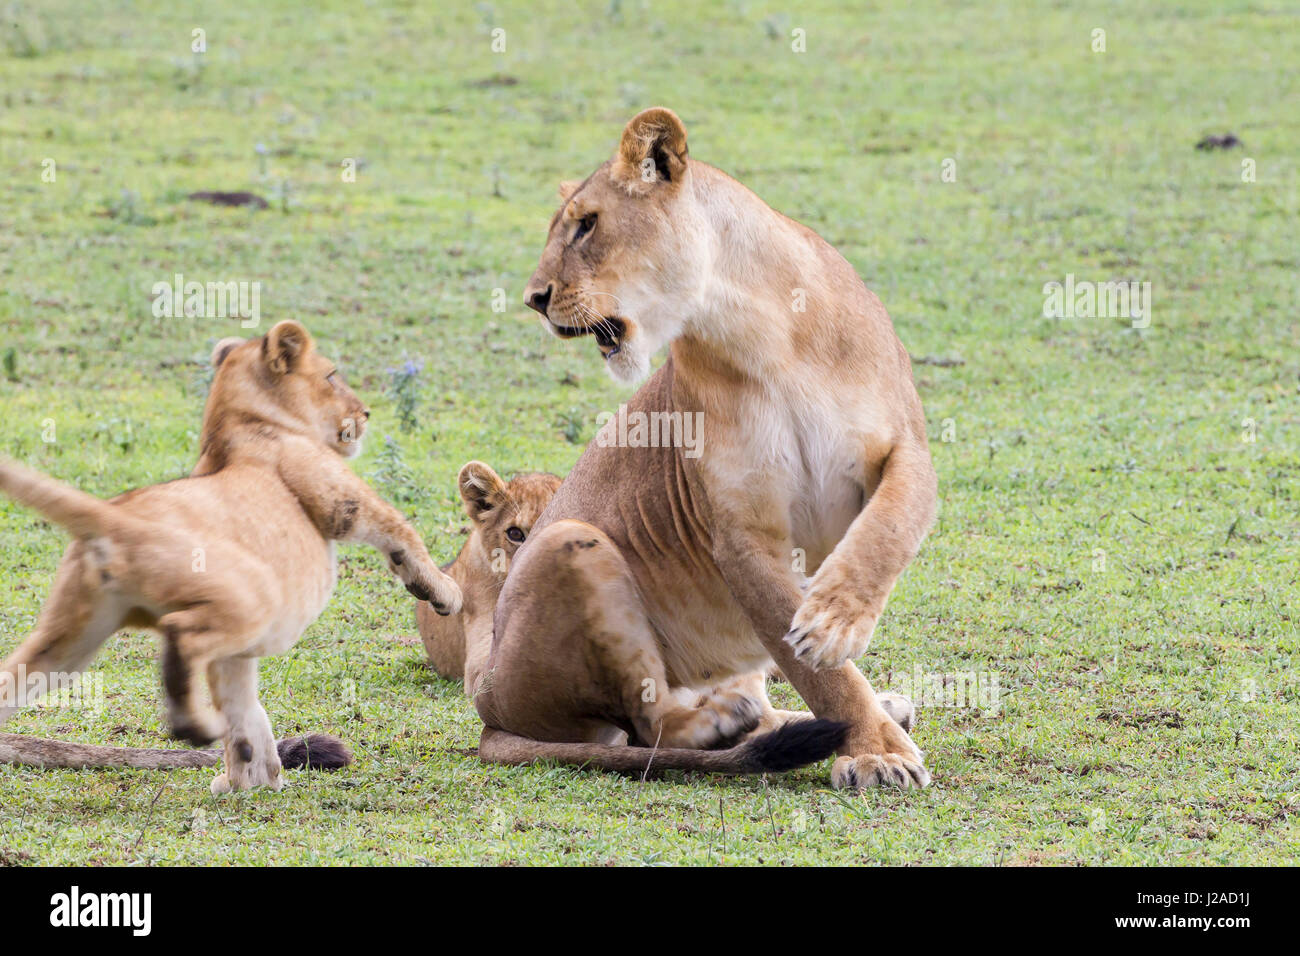 Lionne grogne à swat et commence à la cub, qui essaie de s'éloigner, pivotant sur une patte pendant que les trois autres sont dans l'air, la Ngorongoro Conservation Area, Tanzania Banque D'Images